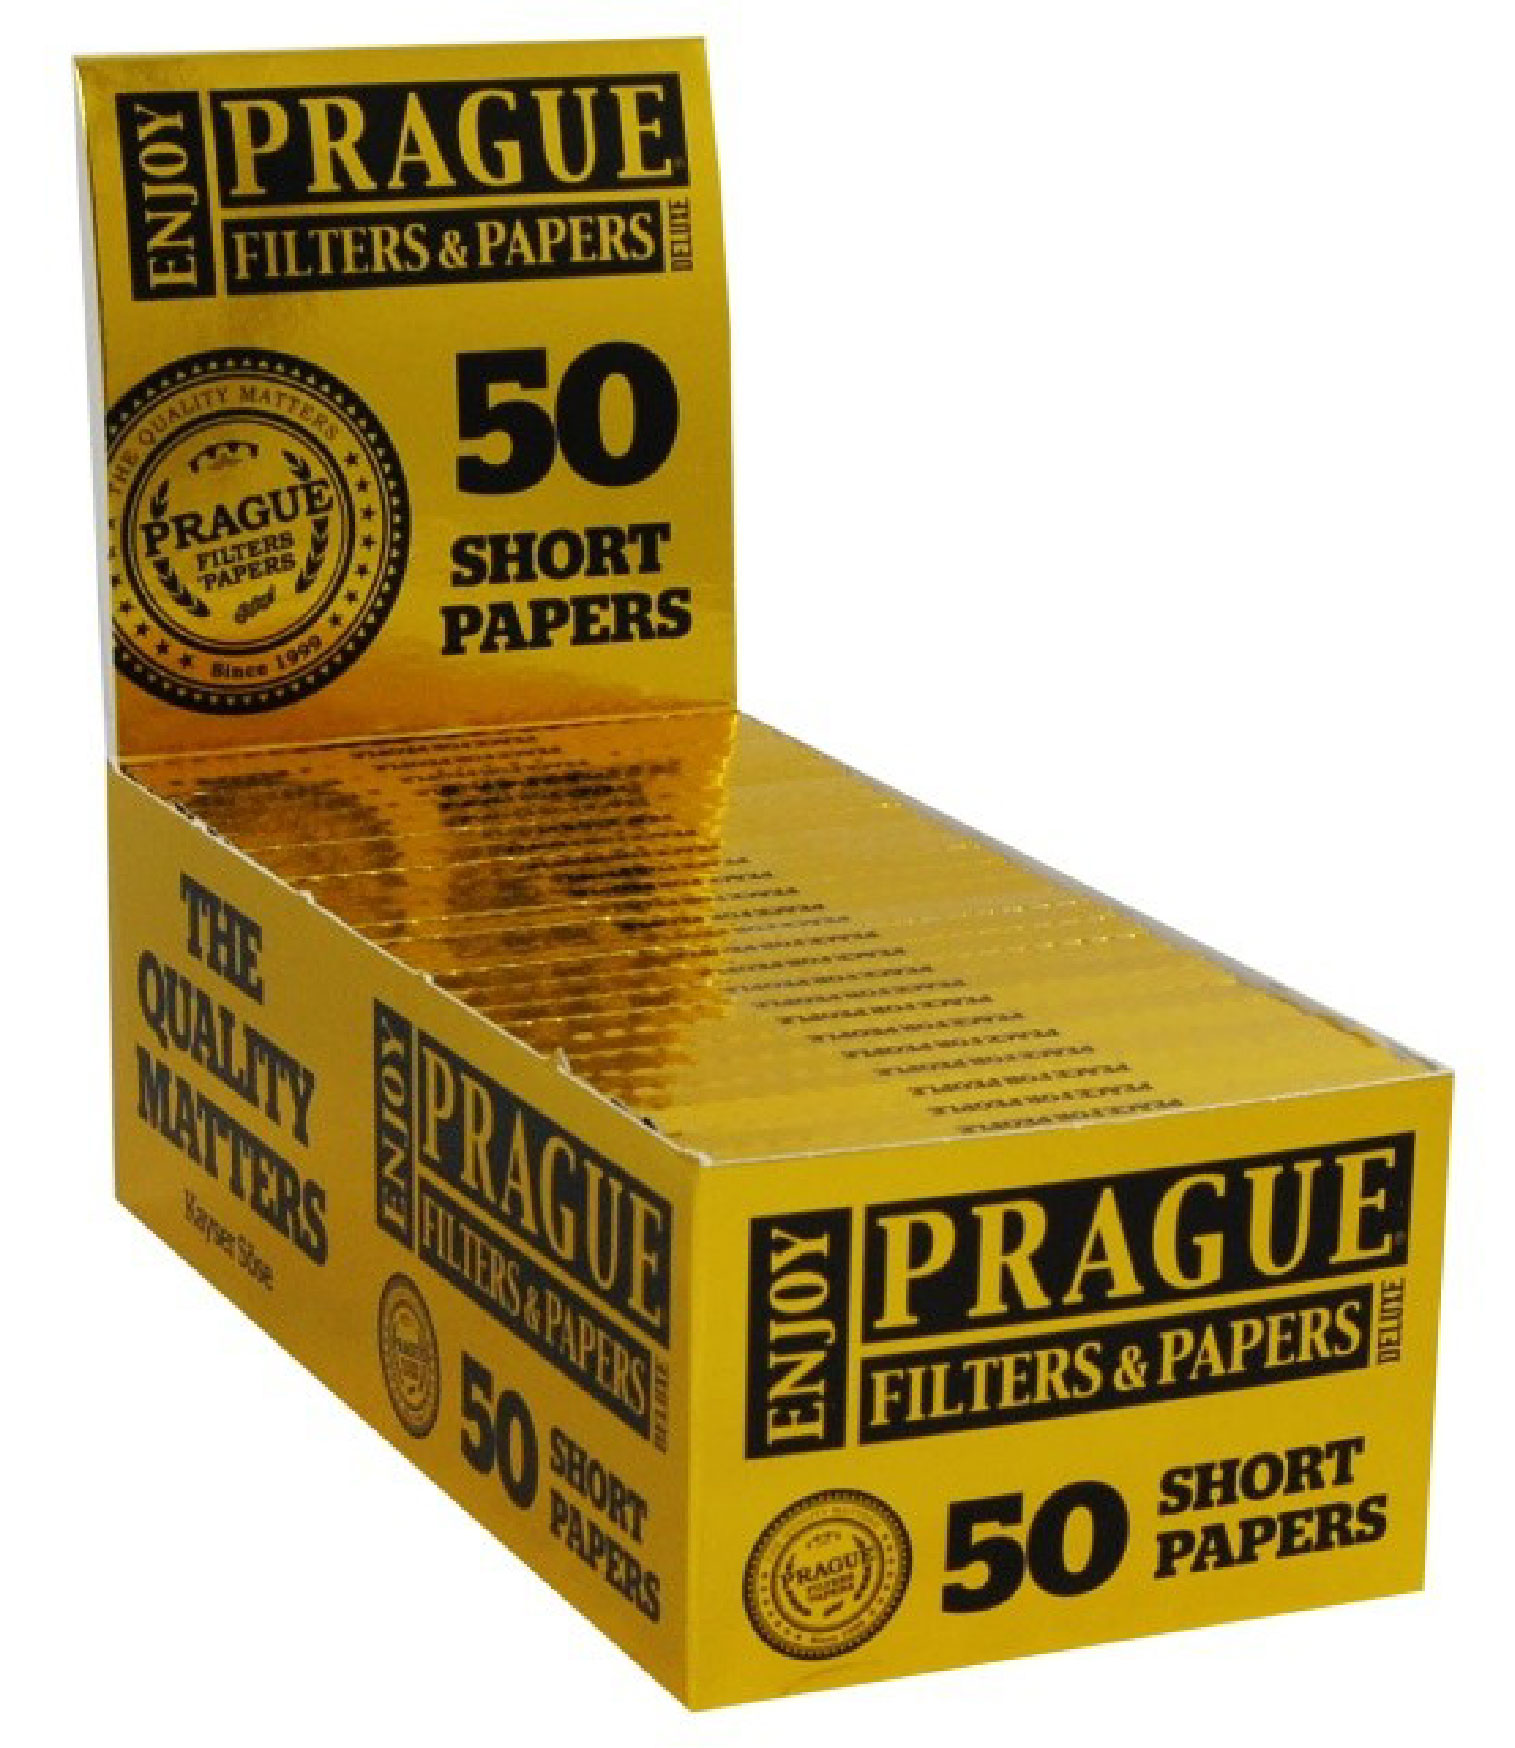 Prague Filters and Papers - Krátké papírky regular - box 50 ks